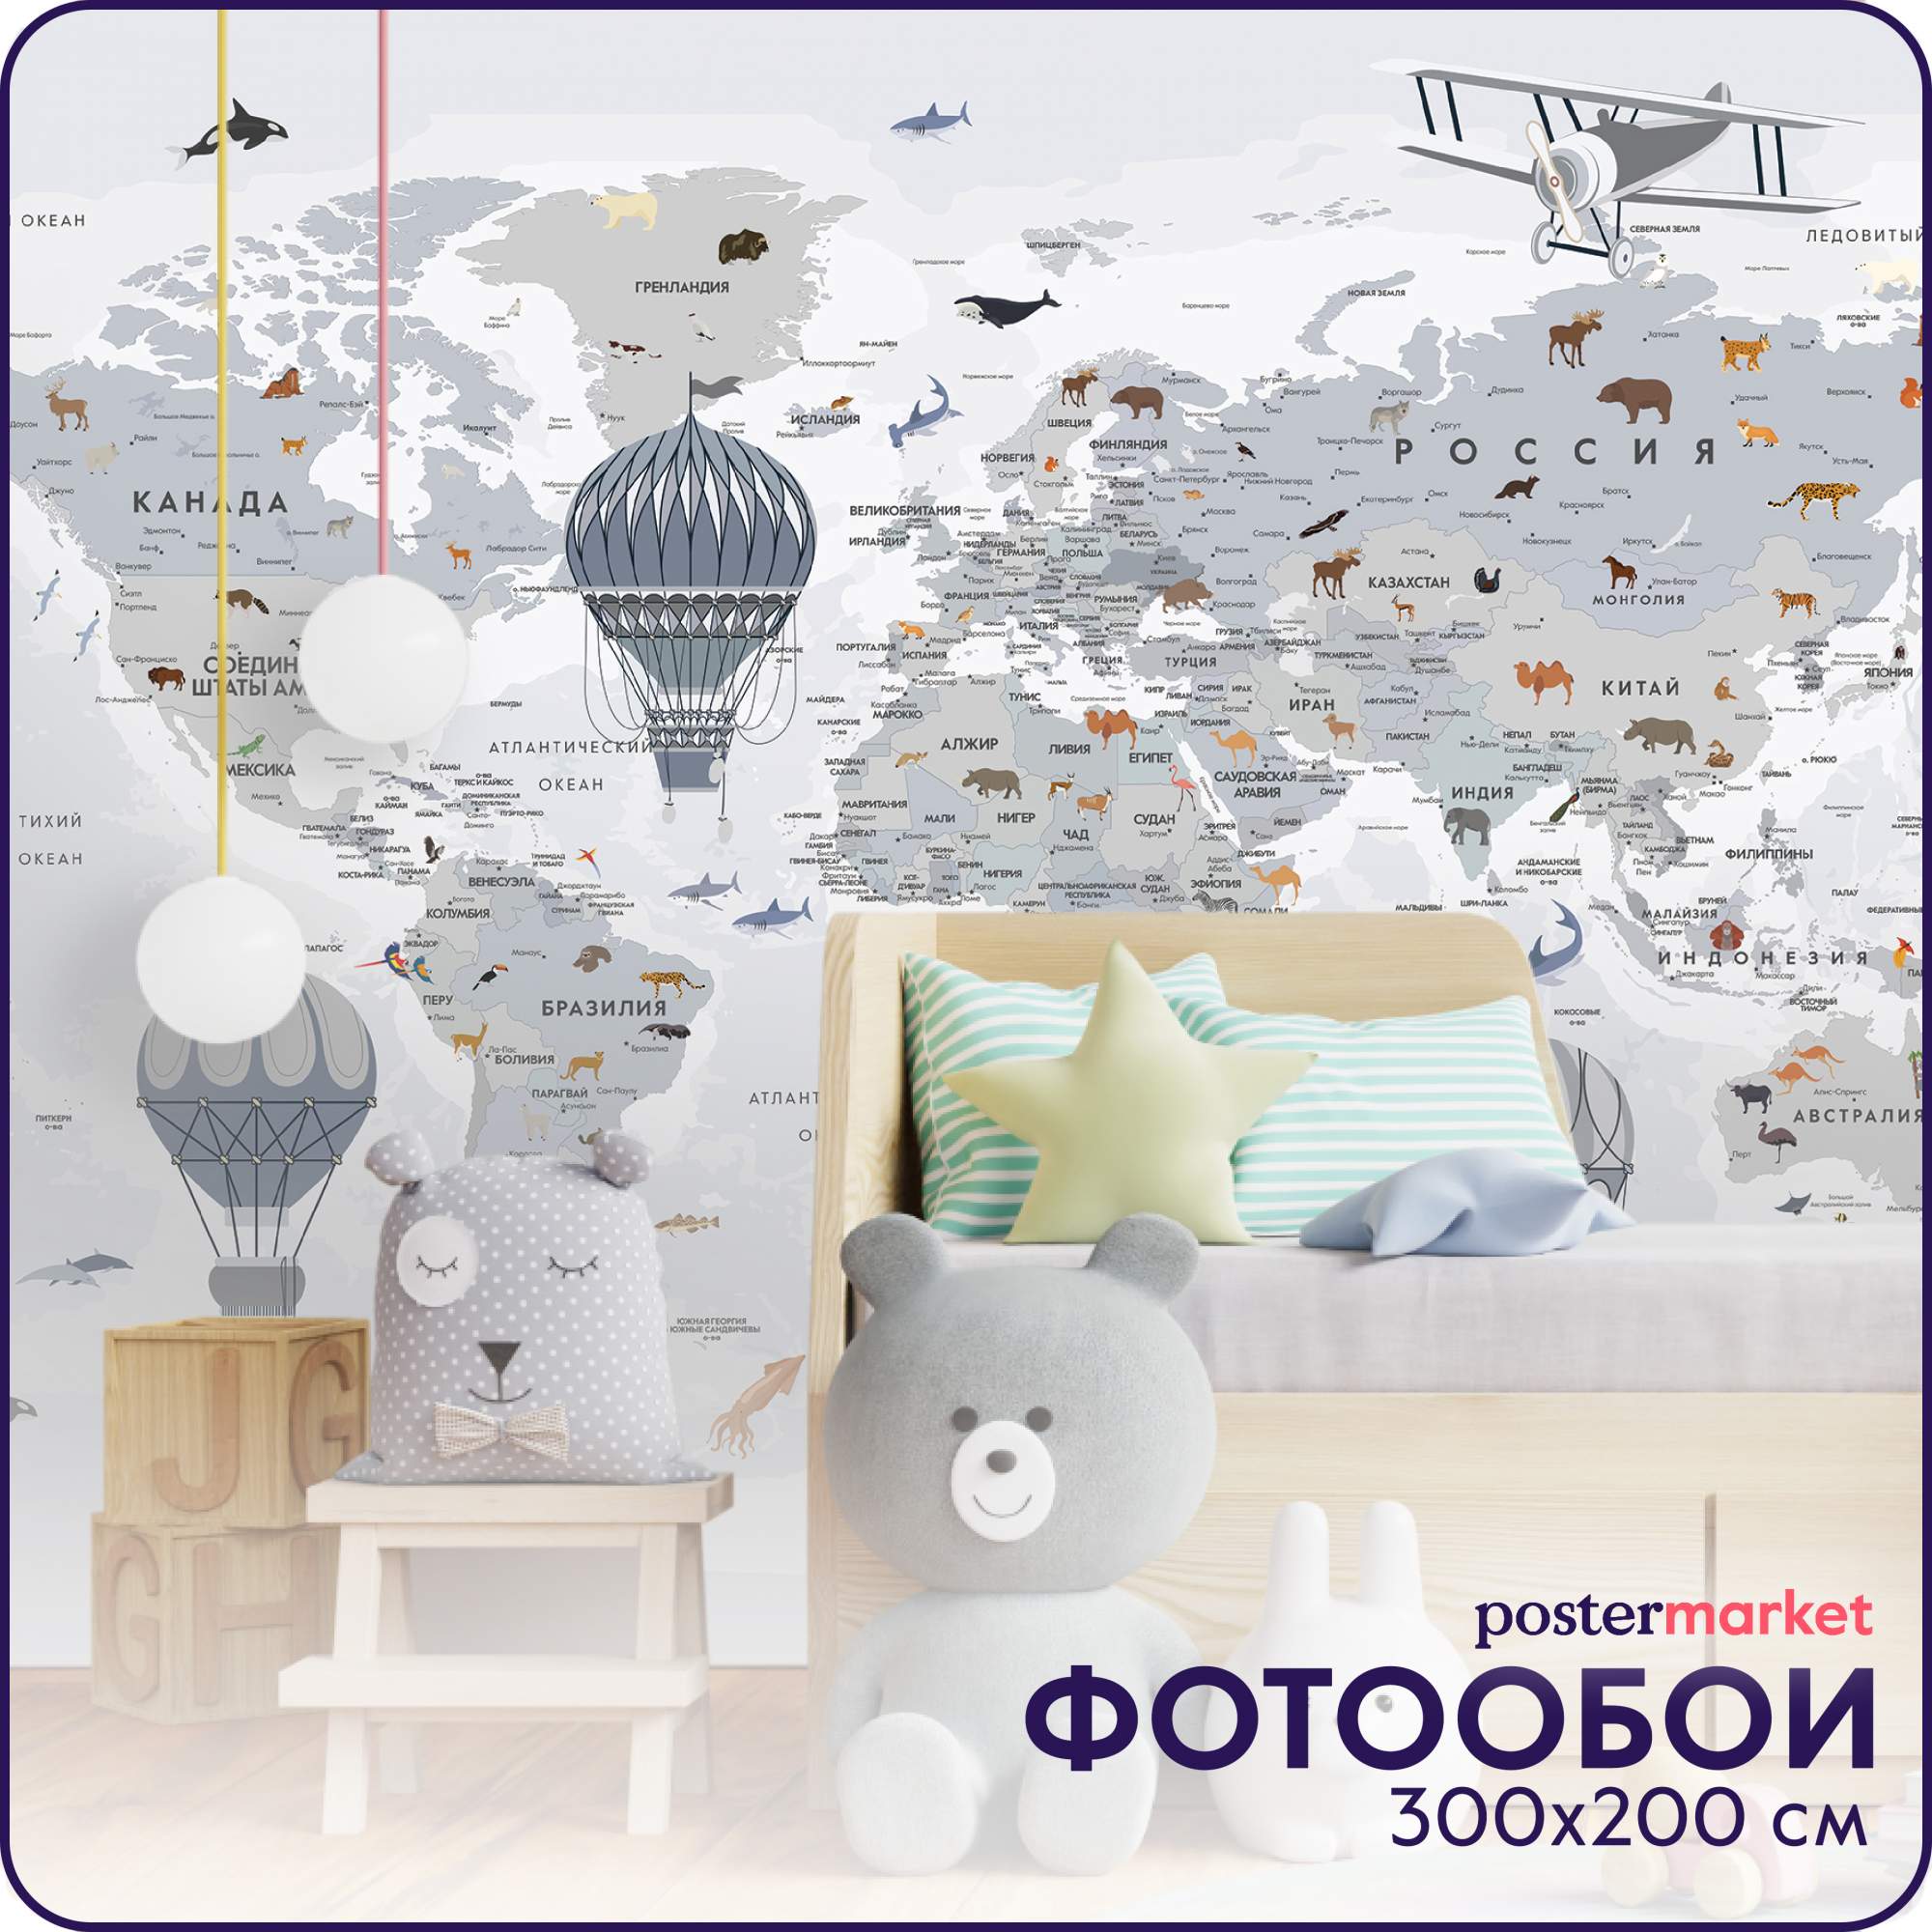 Фотообои детские на стену Postermarket Карта мира WM-382V2 300х200 см - купить в Москве, цены на Мегамаркет